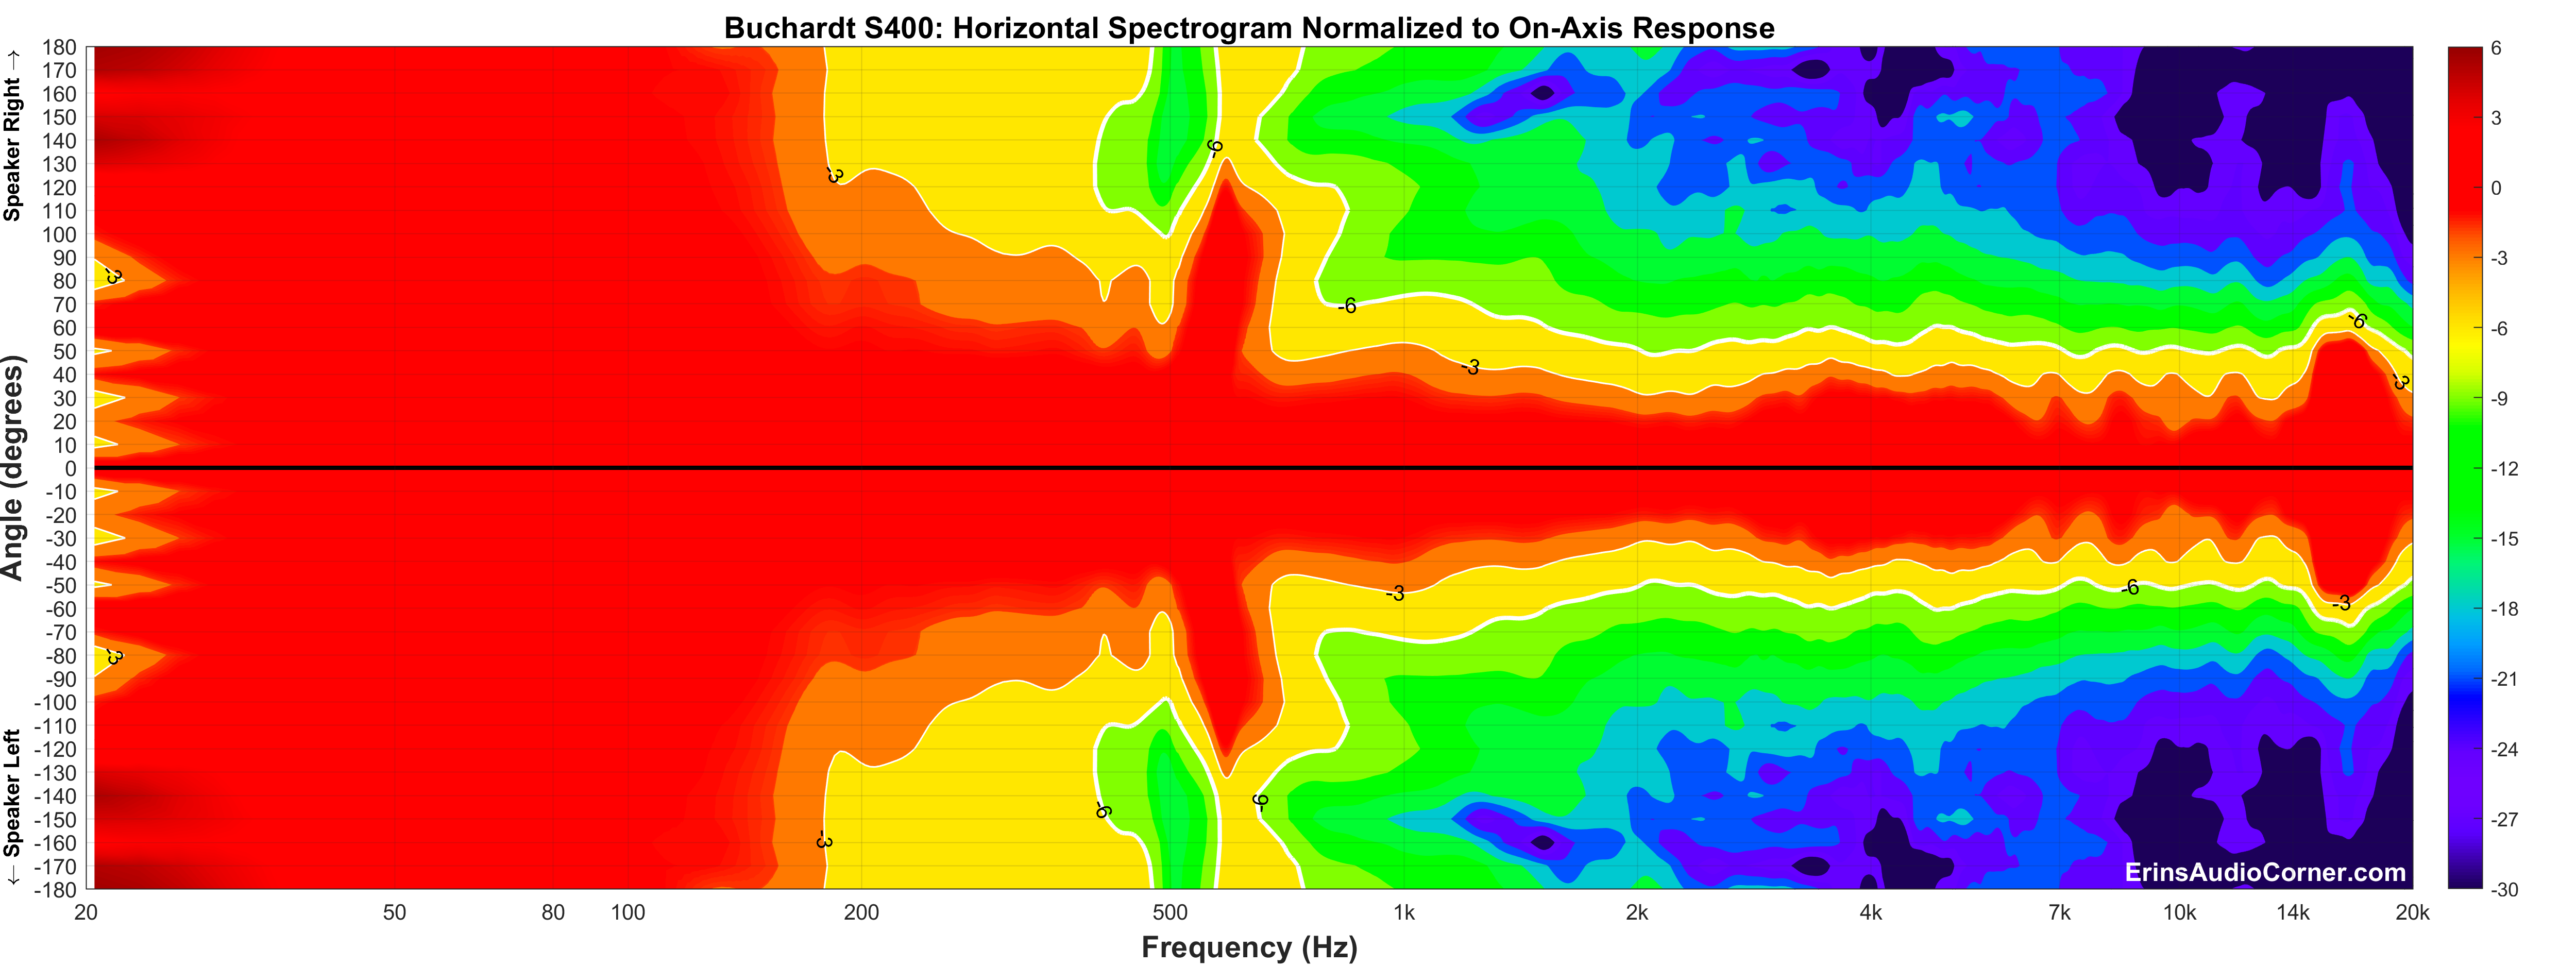 Buchardt S400 Horizontal Spectrogram_Full.png